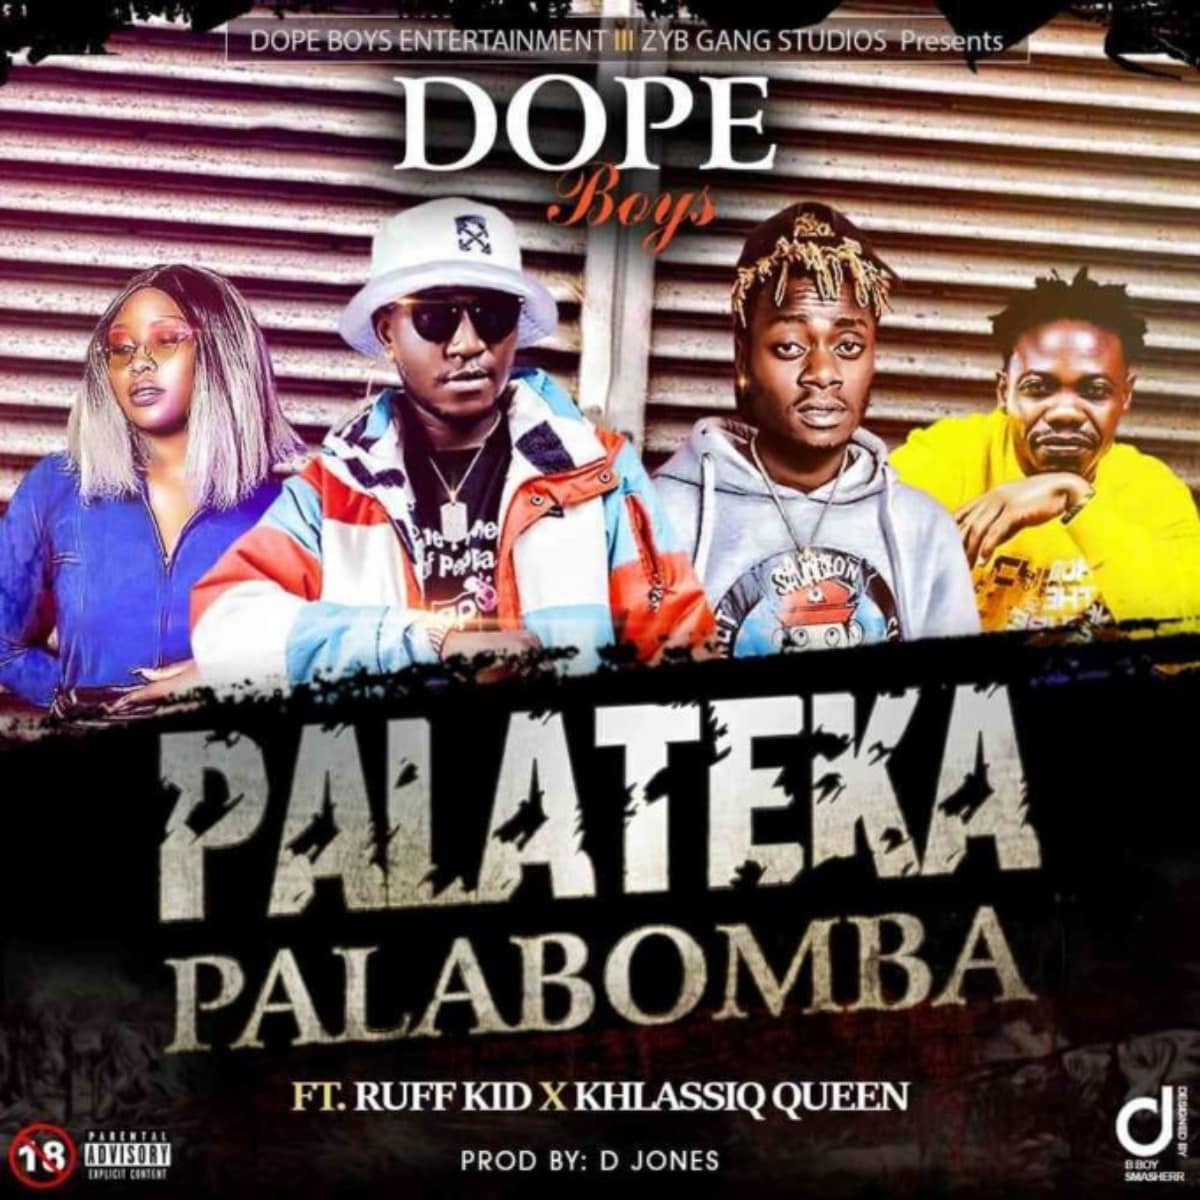 DOWNLOAD: Dope Boys Feat Ruff Kid & Khlassiq – “Palateka Palabomba” Mp3